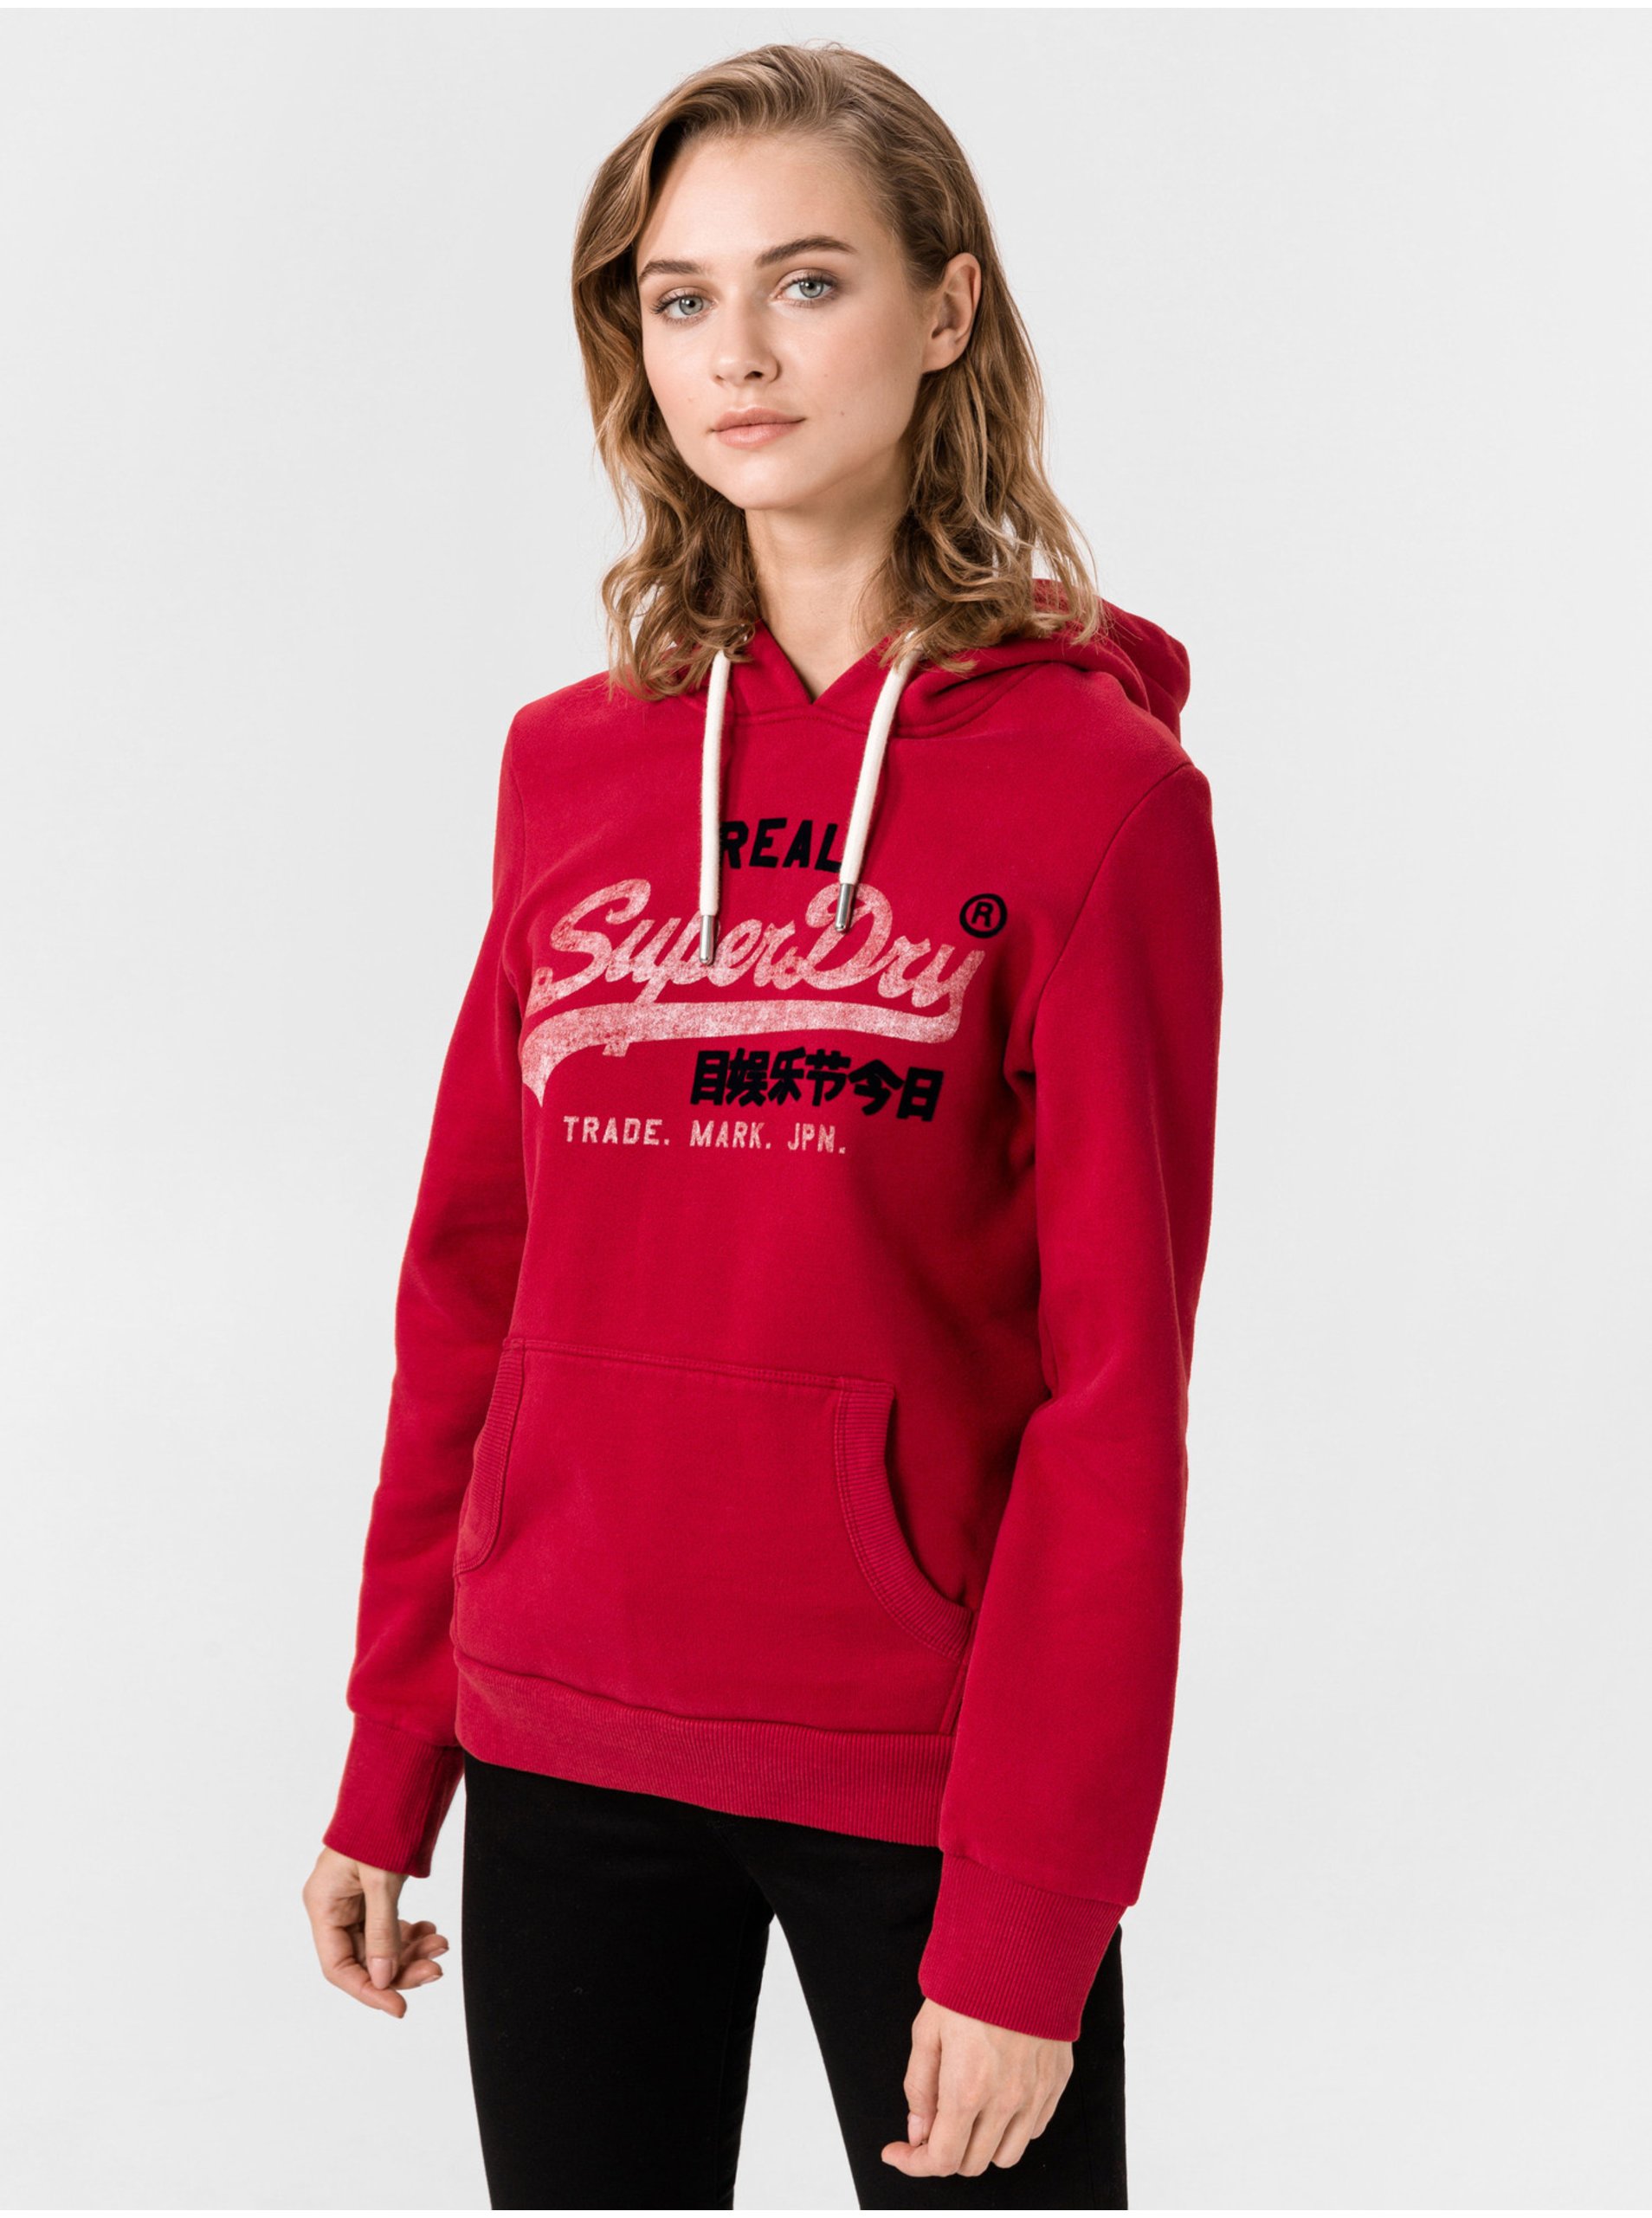 Sweatshirt SuperDry - Women